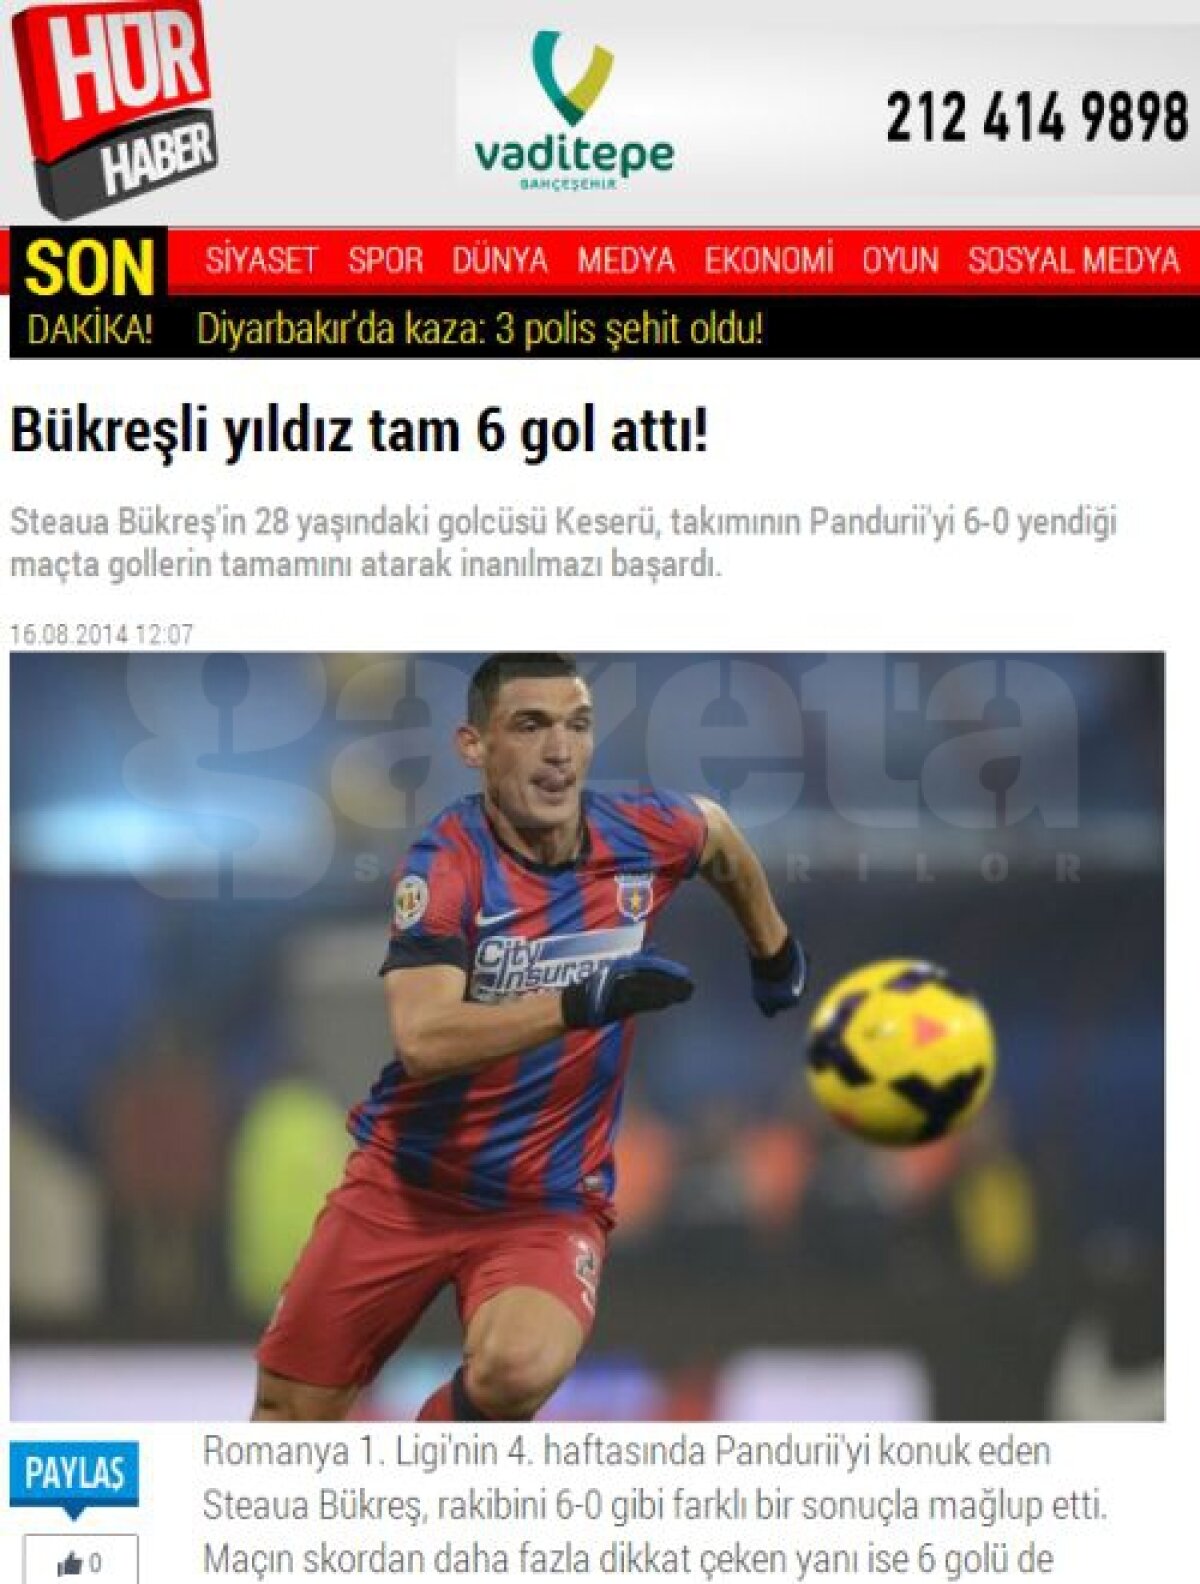 VIDEO Prestaţia lui Keşeru din meciul cu Pandurii a făcut înconjurul Europei » Gazzetta dello Sport: "El marchează mereu!"